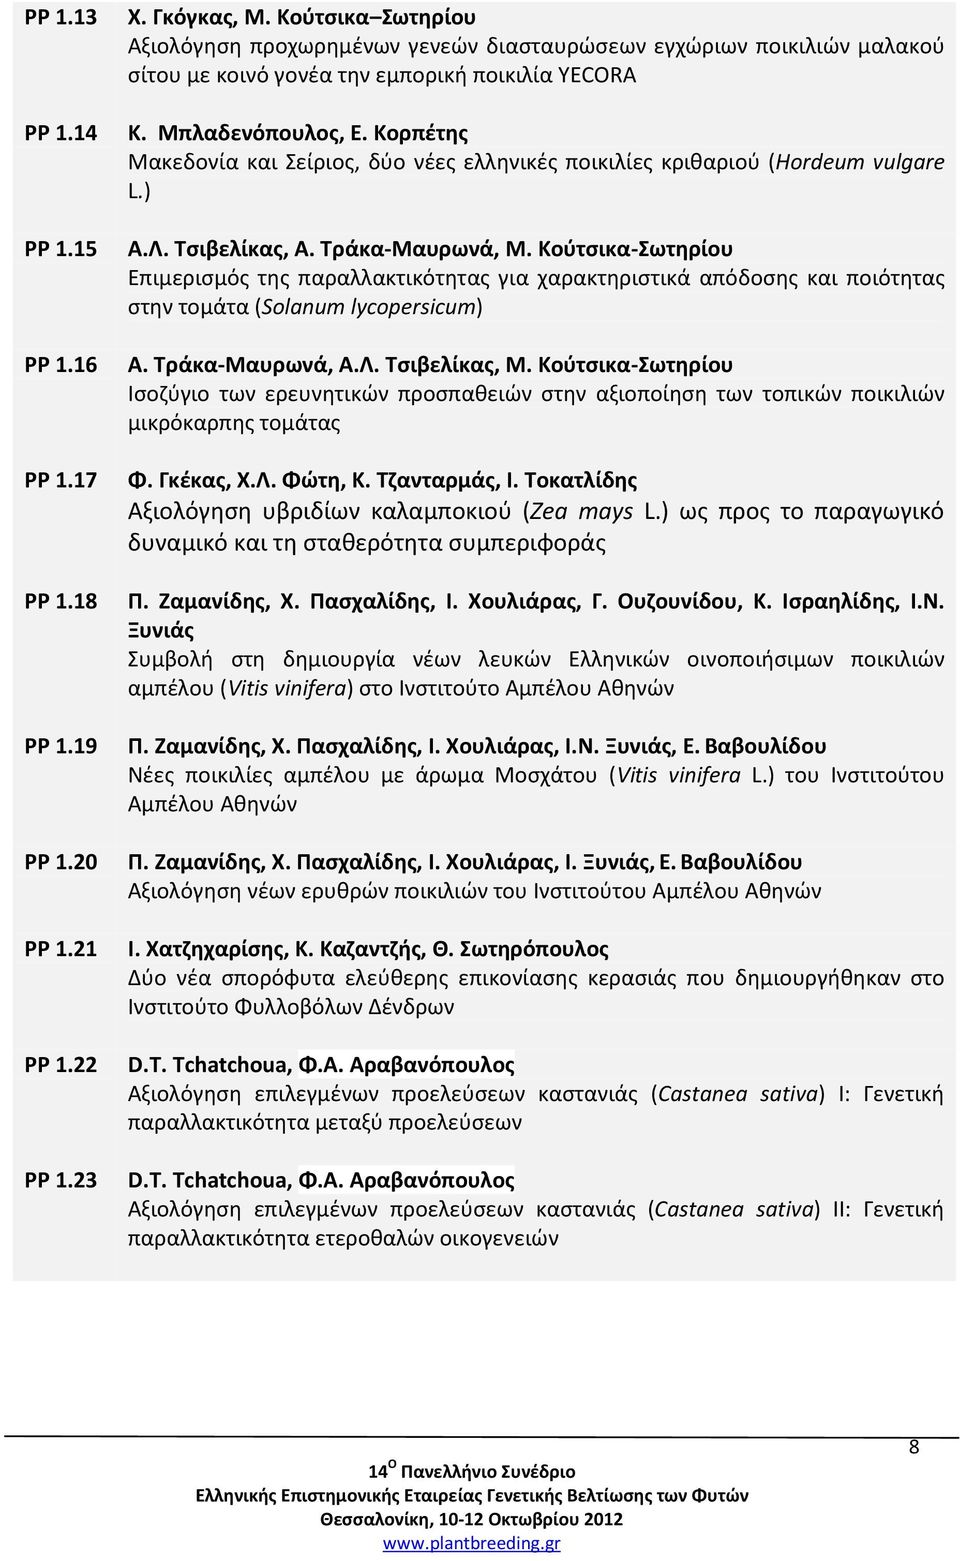 Κορπέτης Μακεδονία και Σείριος, δύο νέες ελληνικές ποικιλίες κριθαριού (Hordeum vulgare L.) Α.Λ. Τσιβελίκας, Α. Τράκα-Μαυρωνά, Μ.